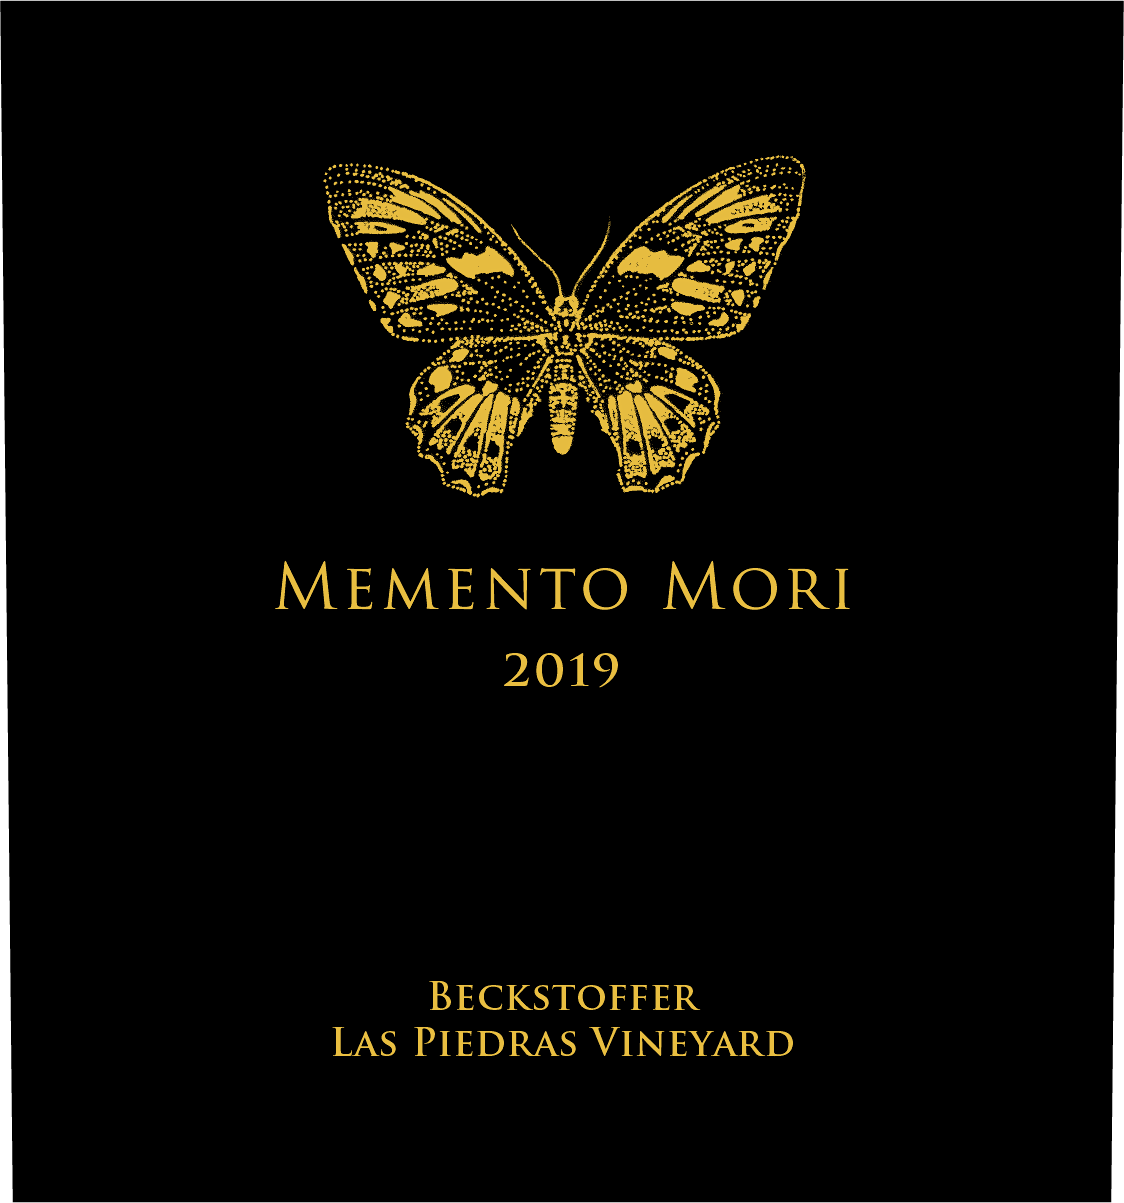 Label for Memento Mori